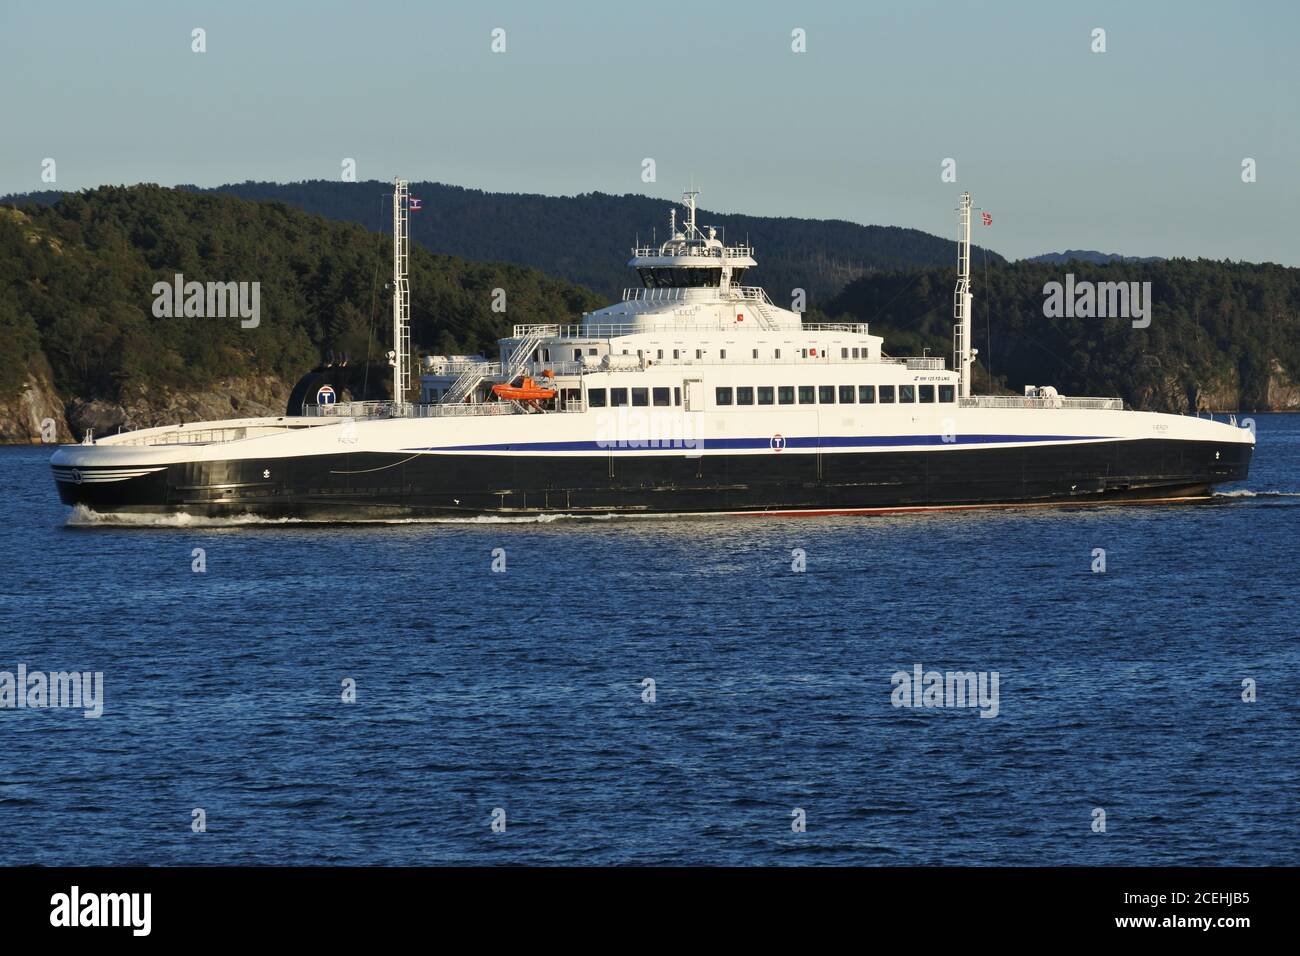 Ferry; Ferje; Norge; Noreg; Norway; Færoy; Færøy; Halhjem; sandvikvag; MM; 125; fd; LNG; Liquid Natural Gas; IMO 9825929; Stock Photo